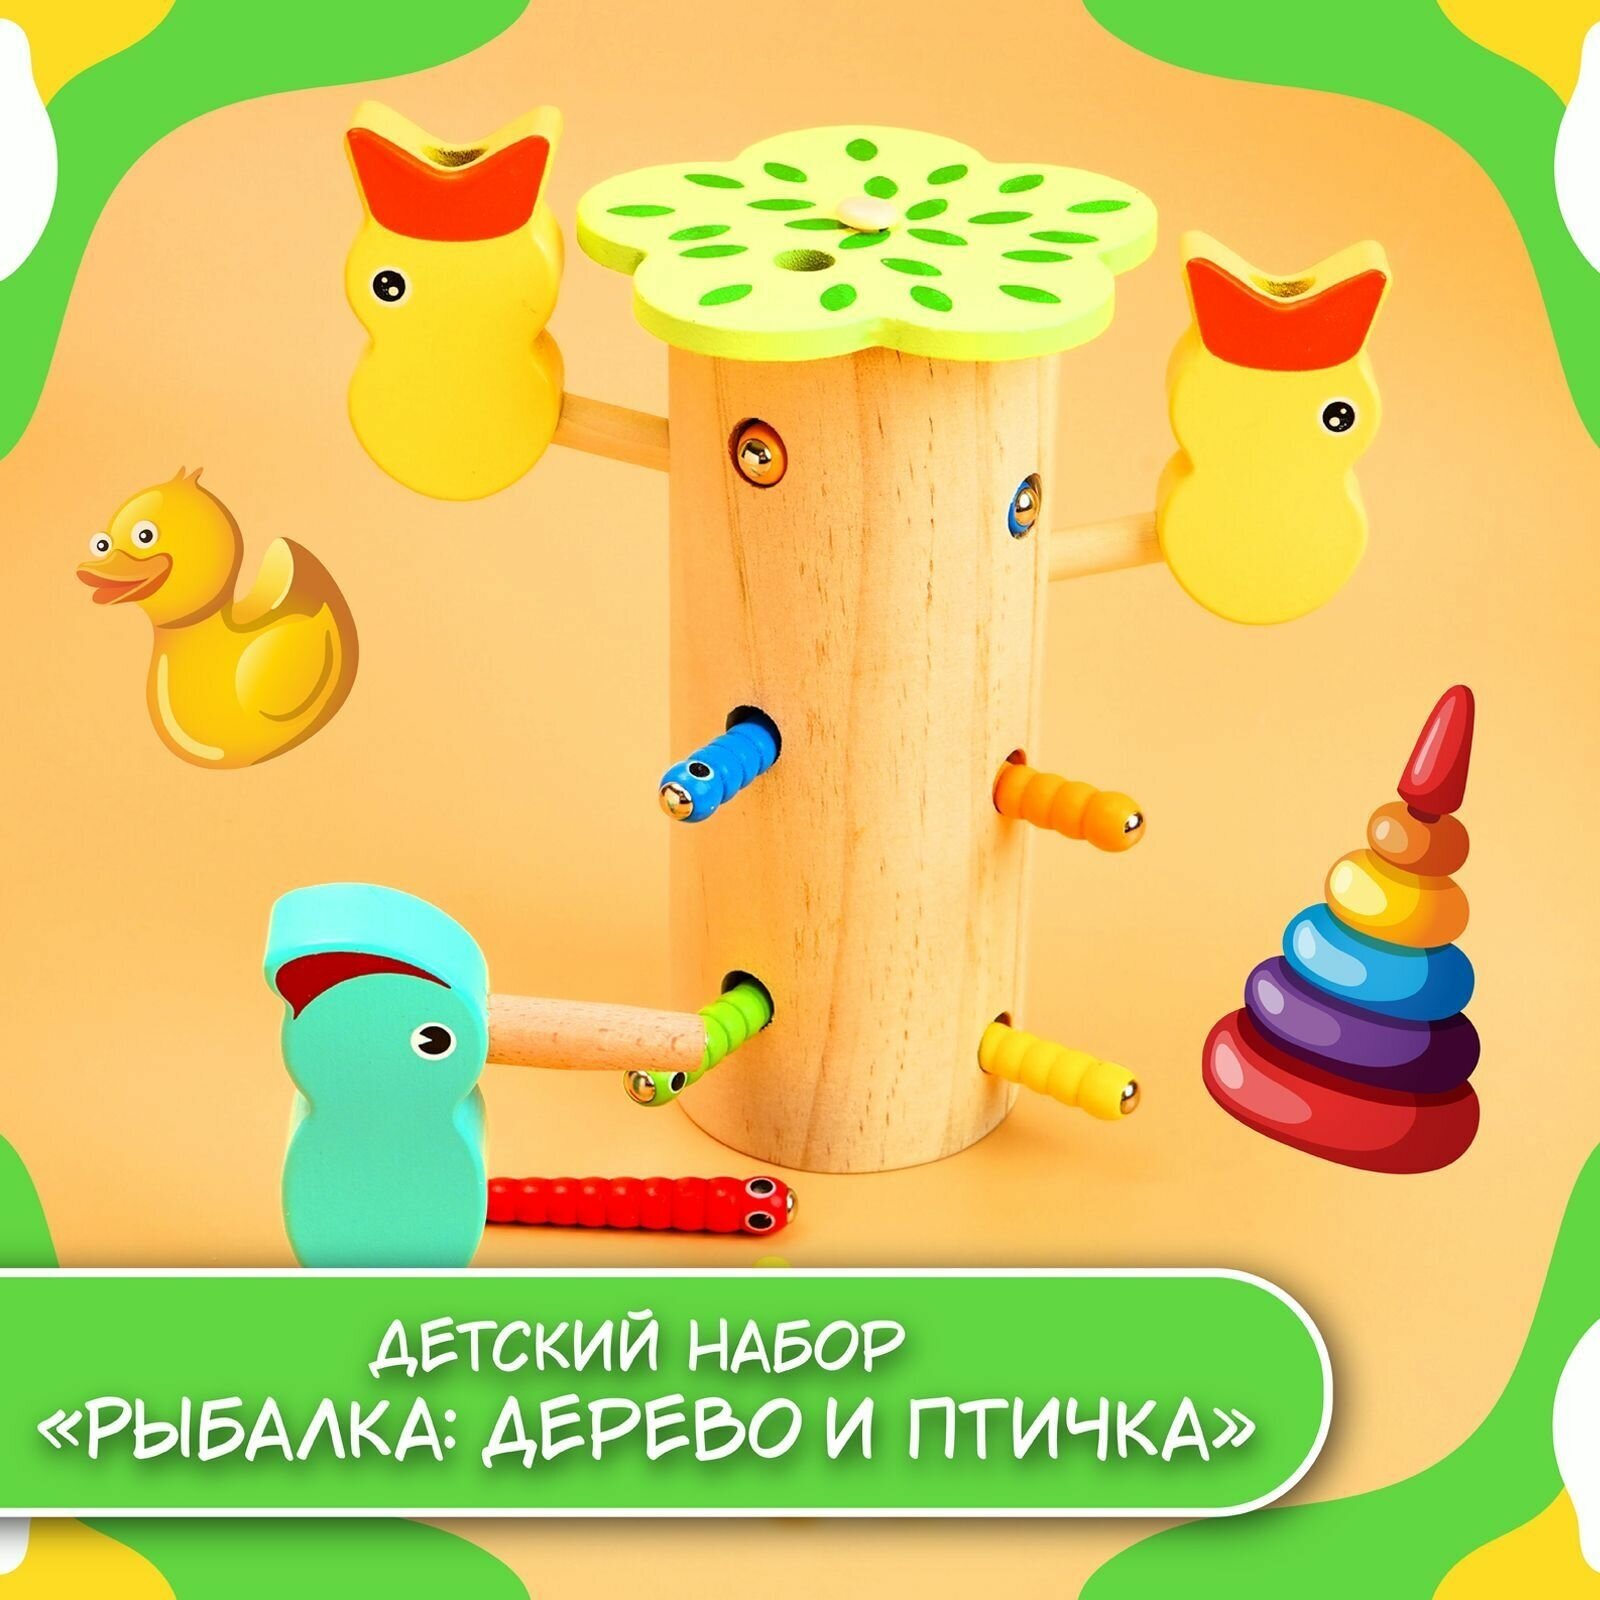 Развивающая игра магнитная рыбалка, "Червячки и птички", для детей и малышей, деревянная